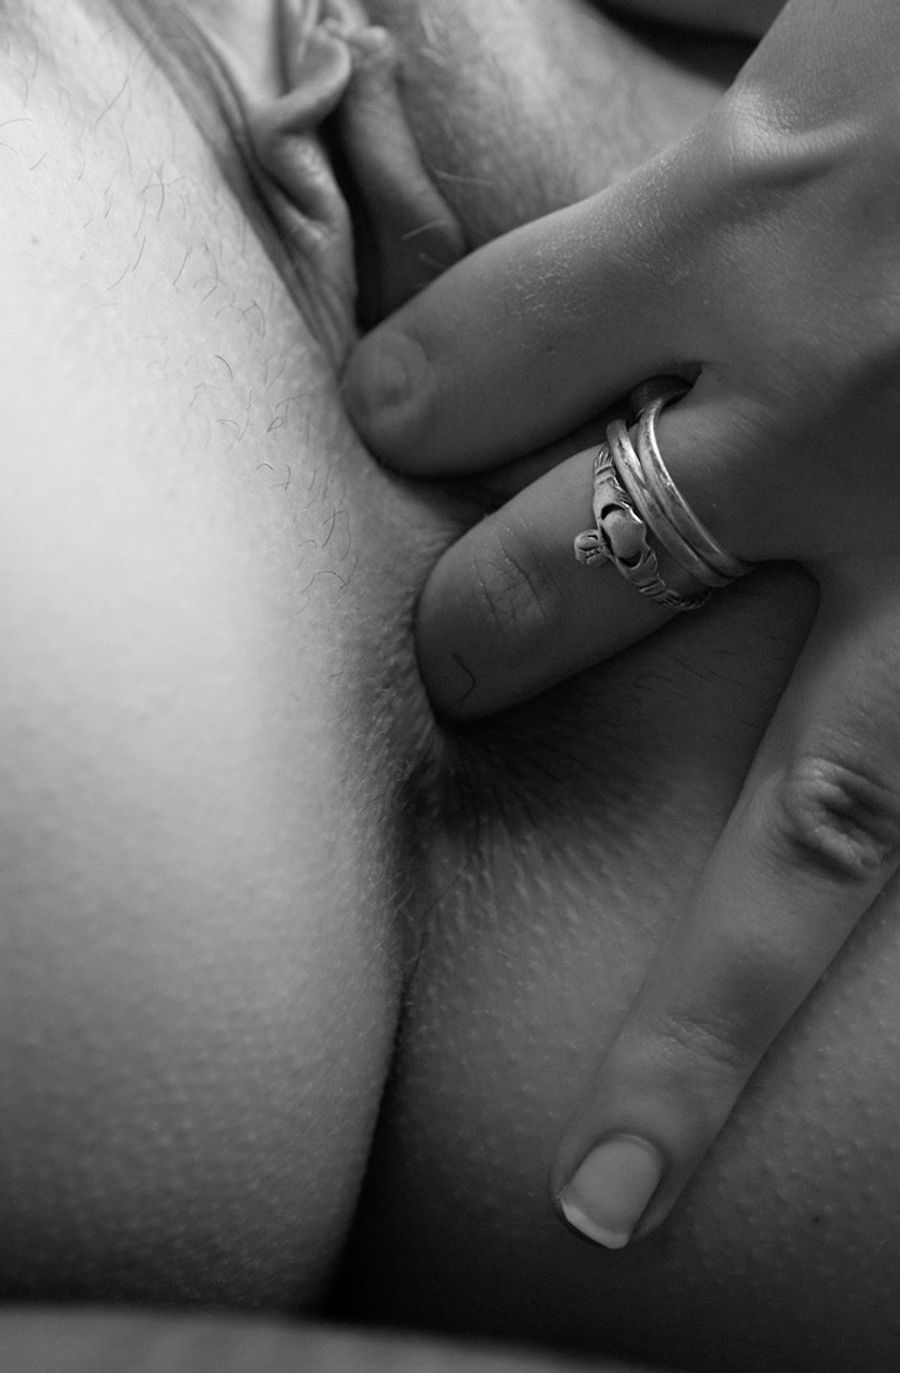 black and white Photo Gallery: Porn Pics, Sex Photos & XXX GIFs